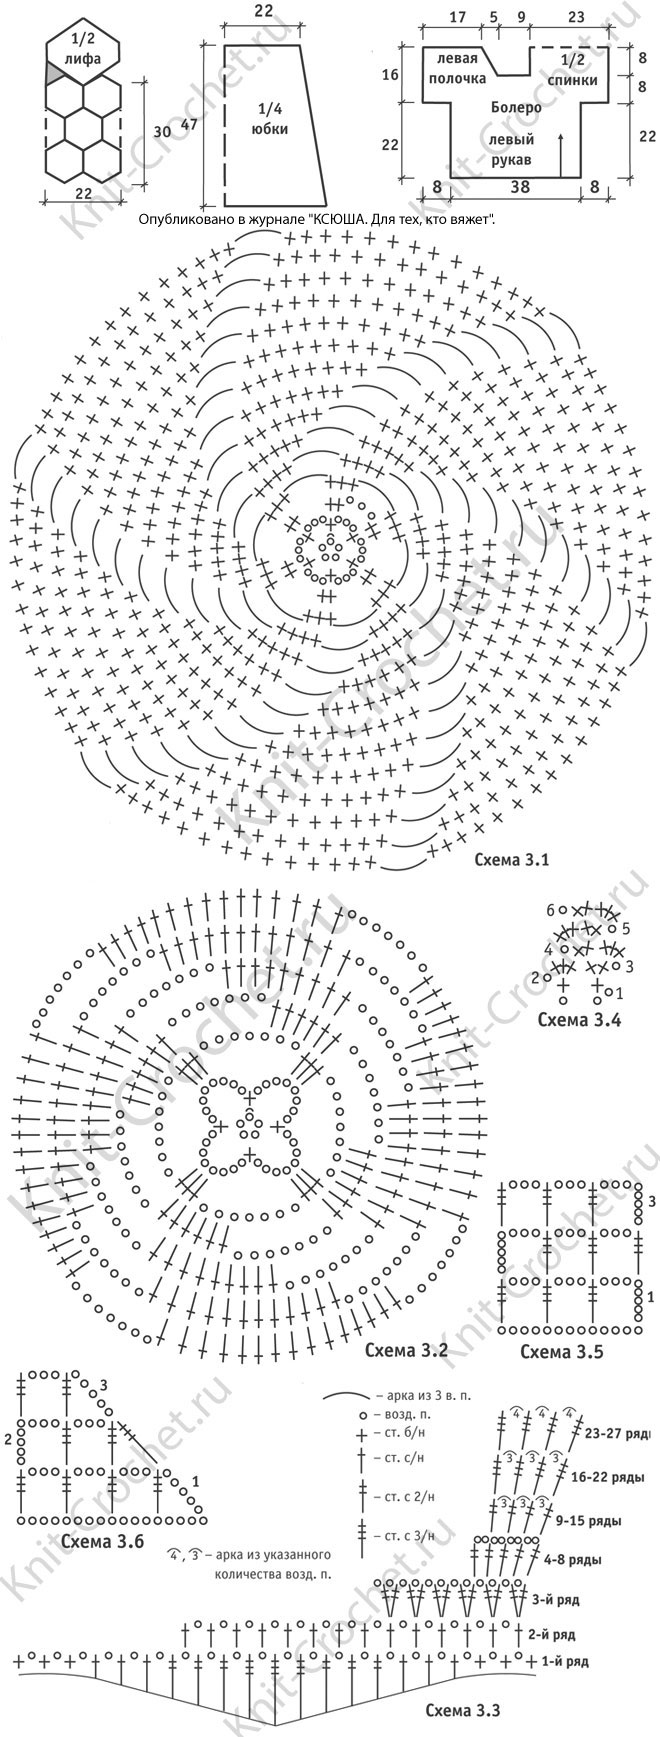 Выкройка, схемы узоров с описанием вязания крючком ажурного платья и болеро размера 42-44.